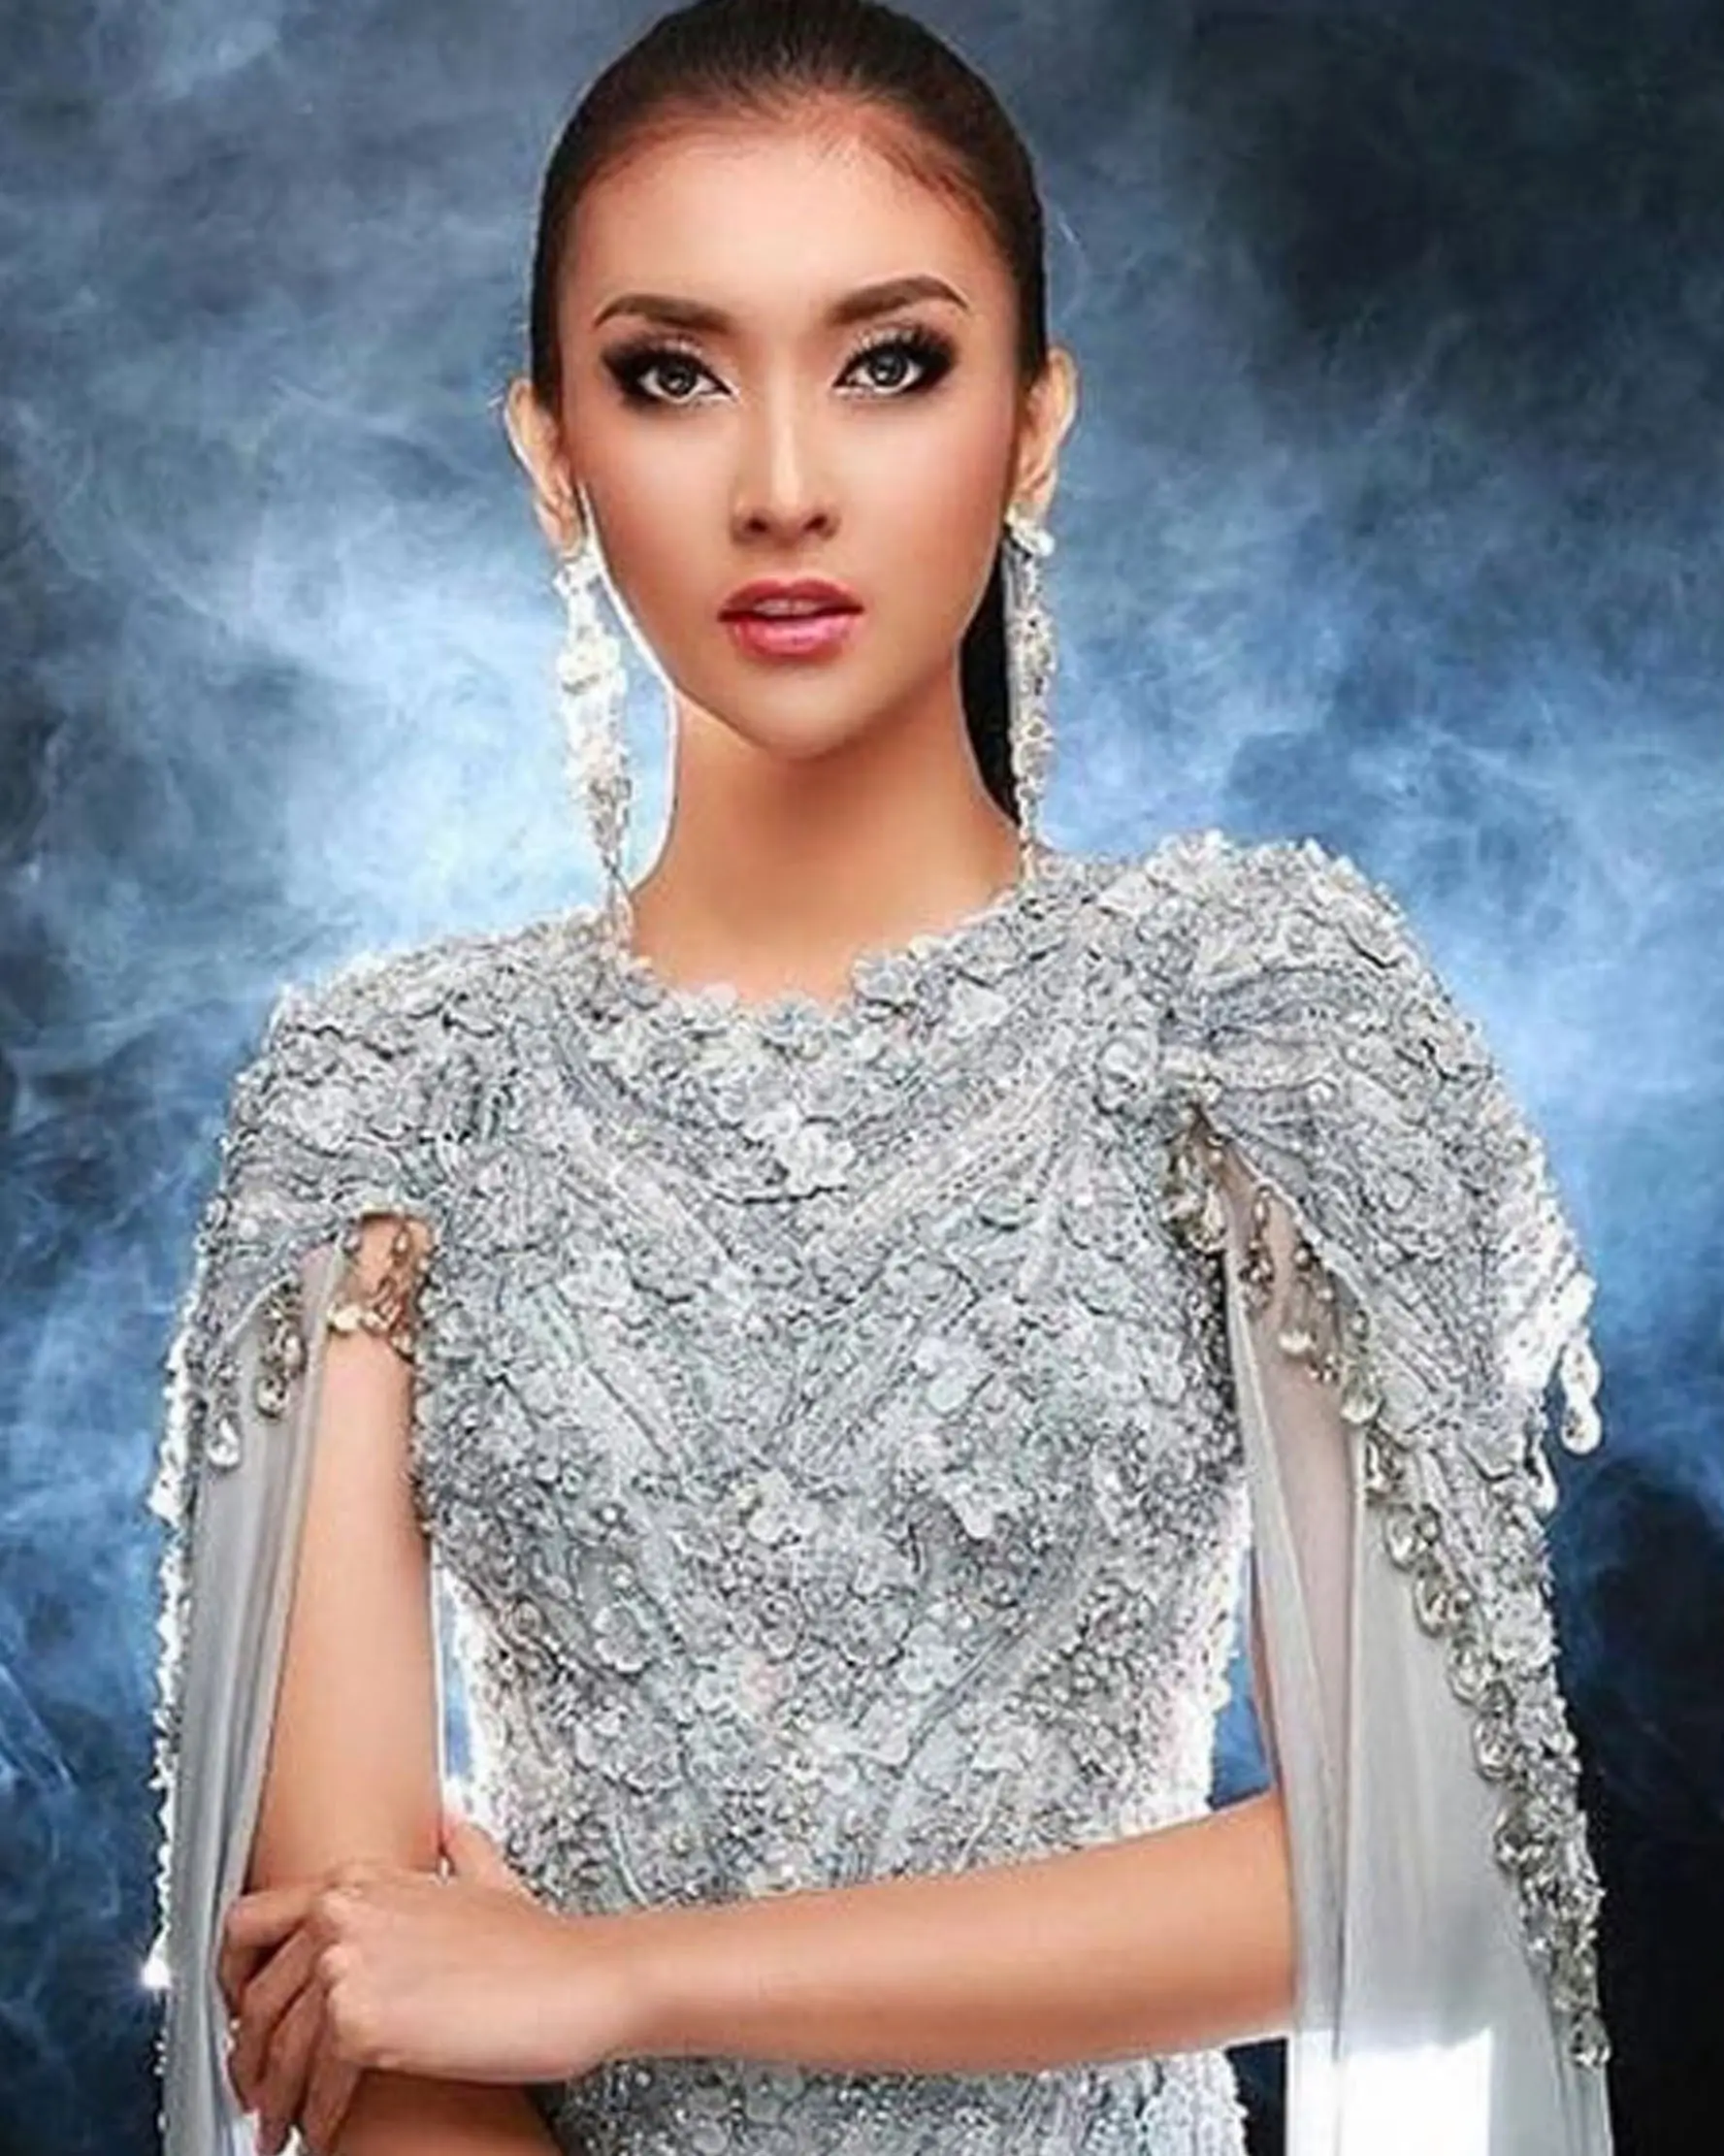 Kevin Liliana memenangkan Miss International 2017 dan gaun yang dikenakannya yang bertema 